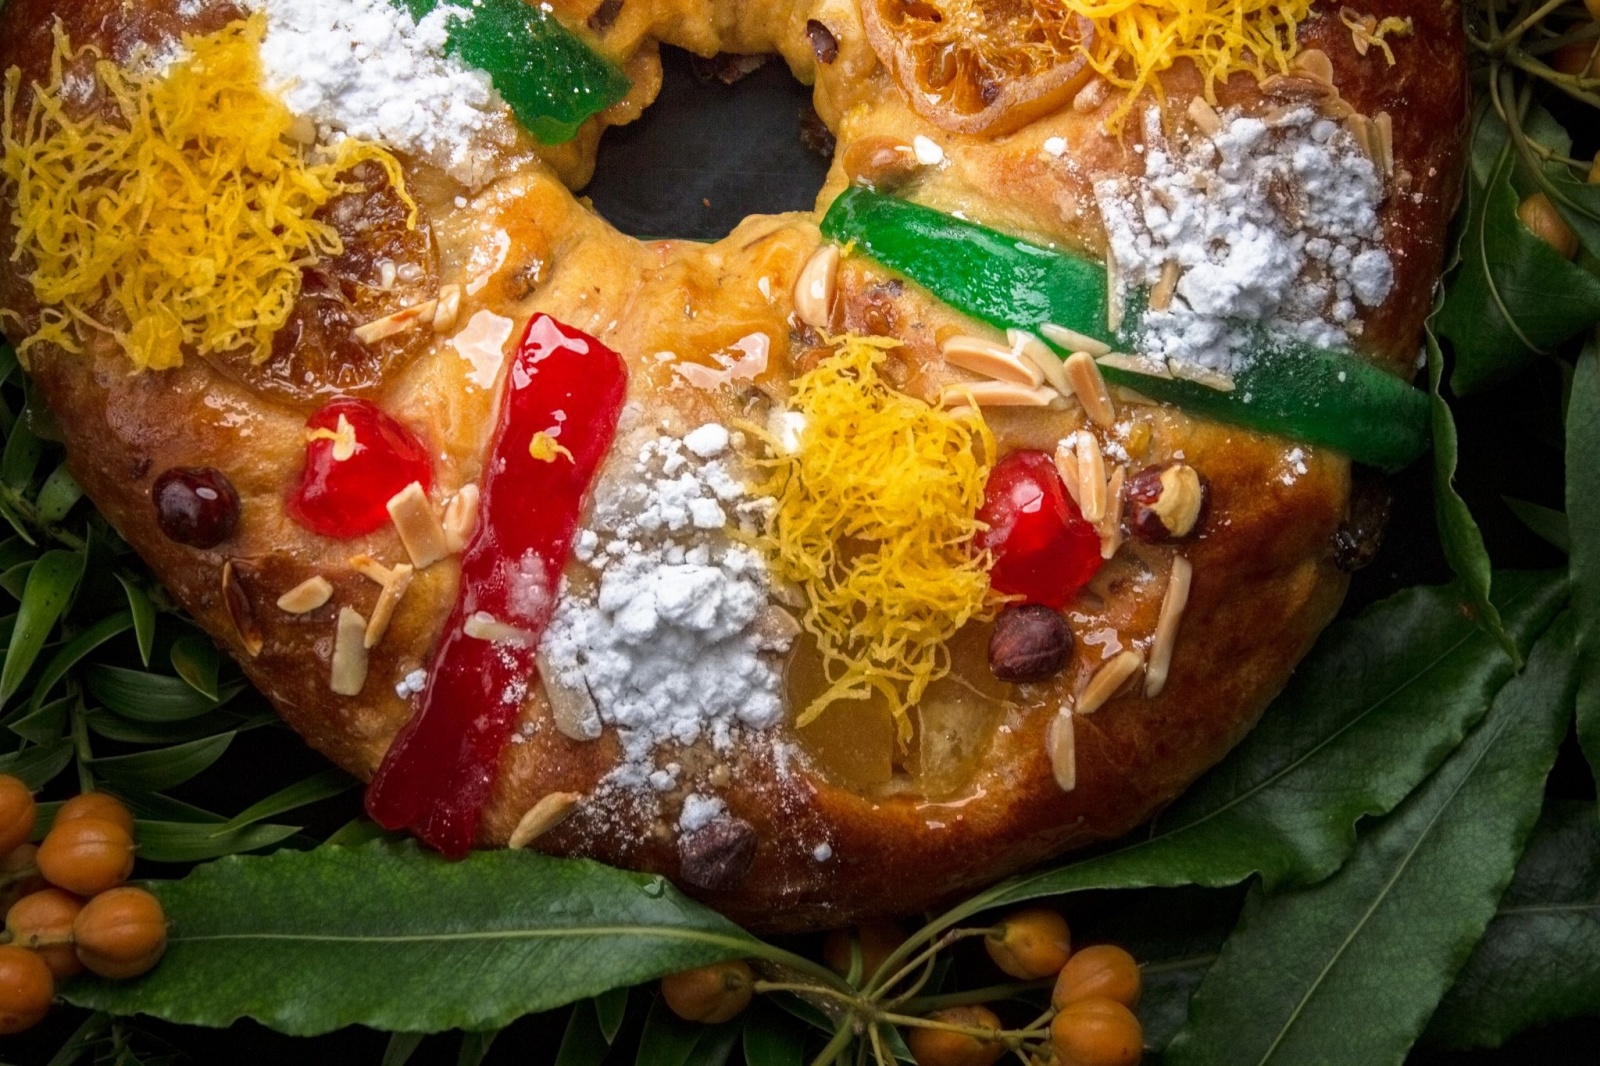 O melhor bolo-rei do País tem “um sabor tradicional ao qual já não